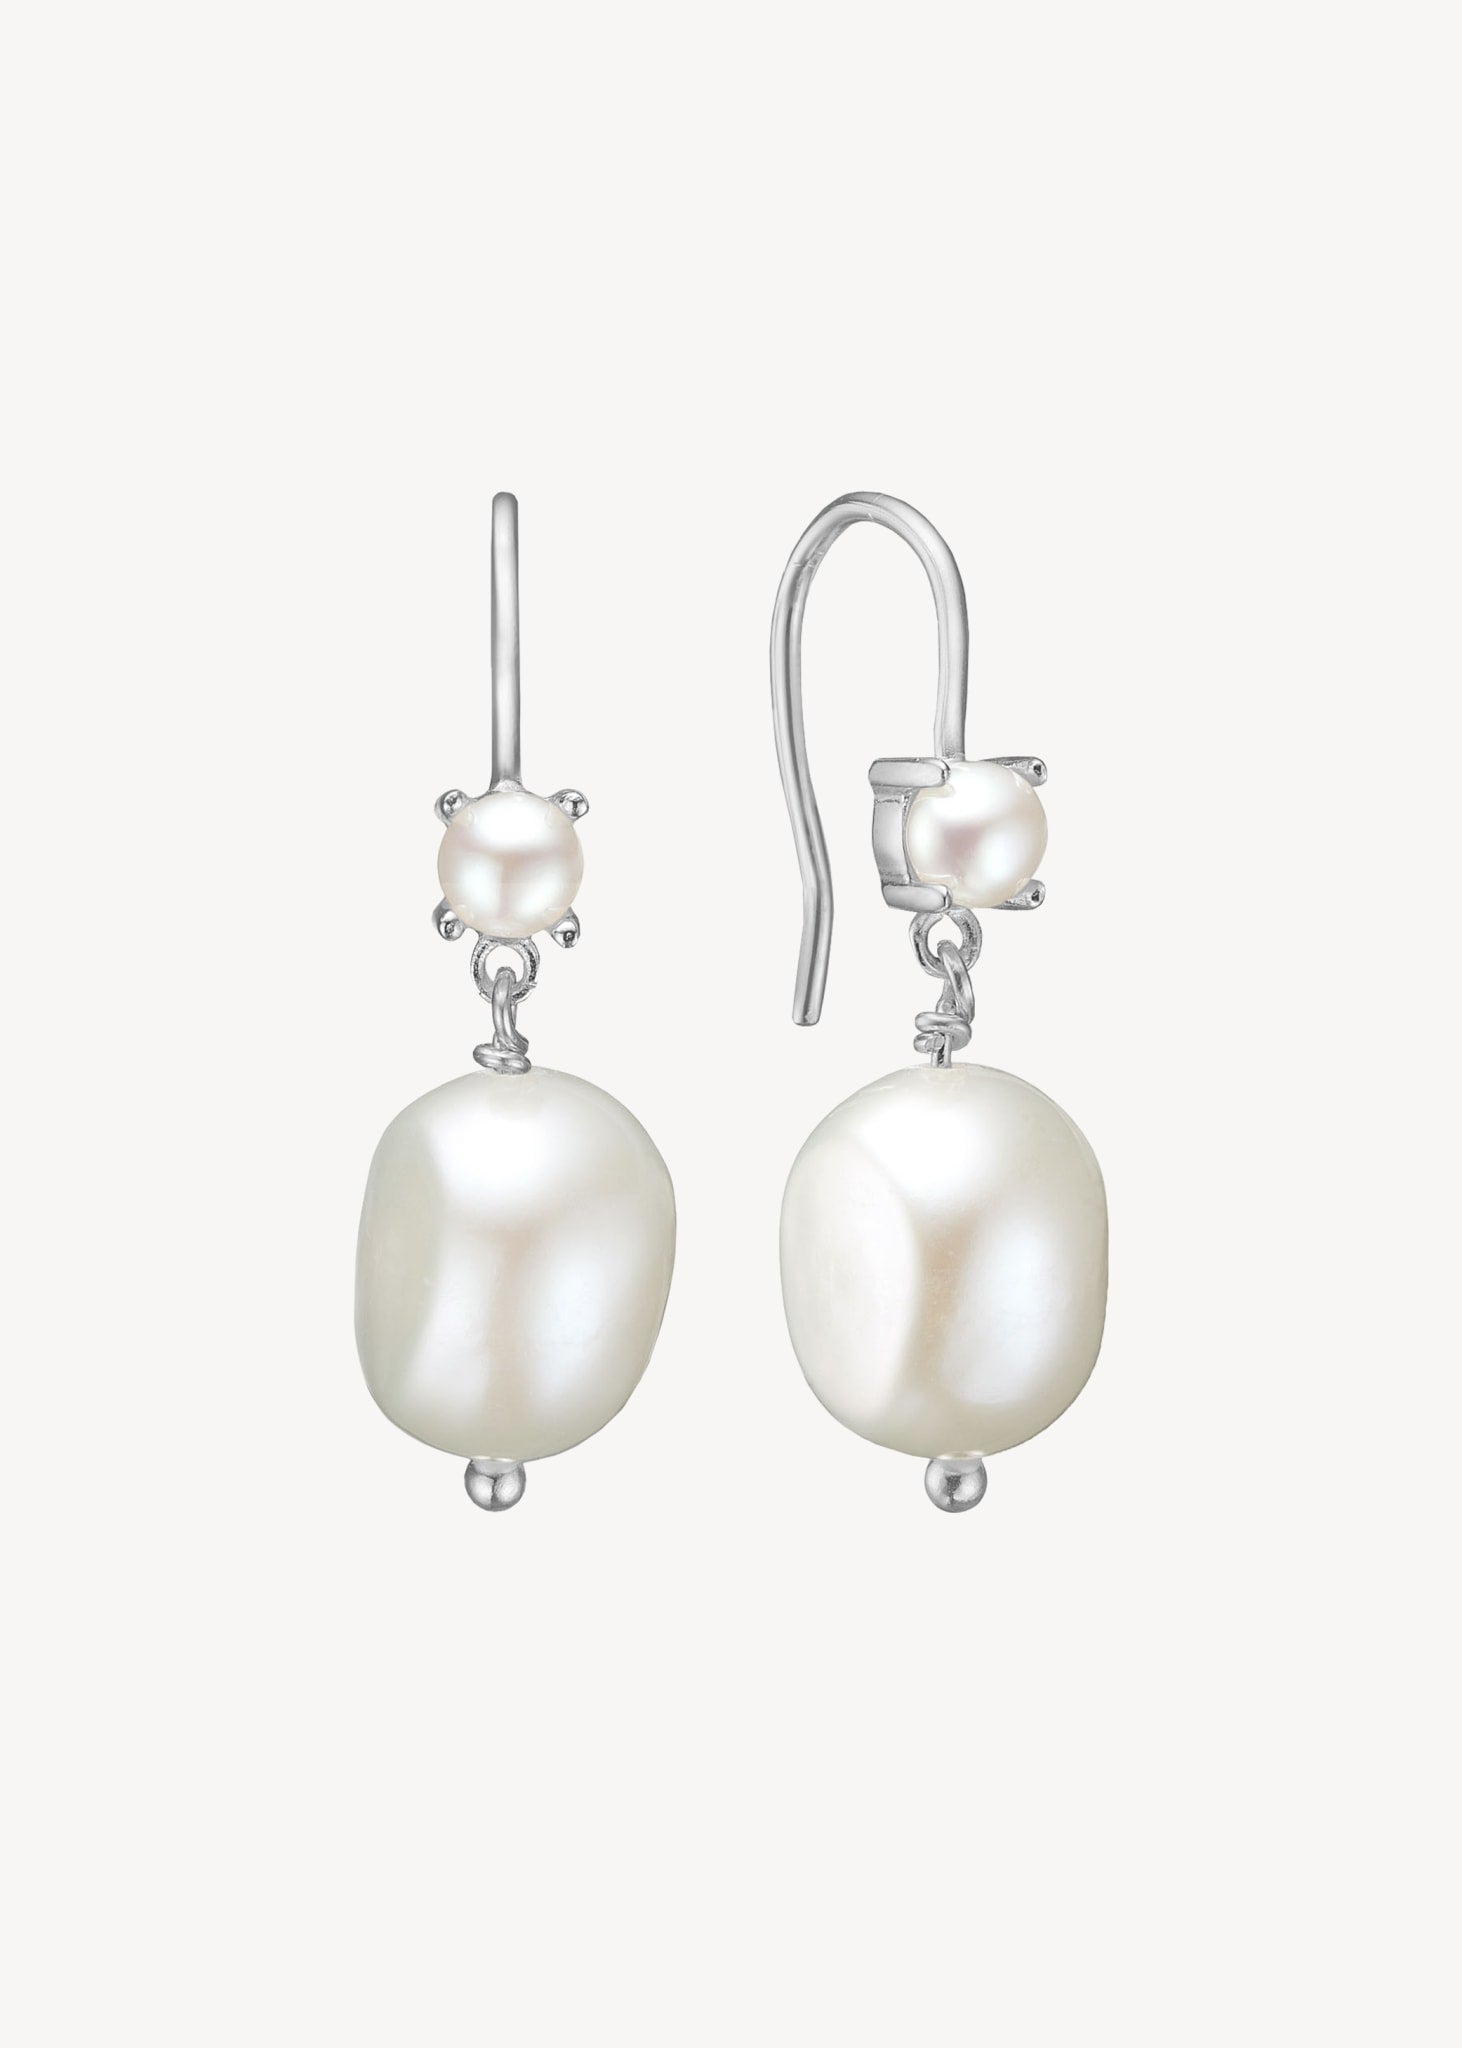 Bibi earrings with Pearl - silver